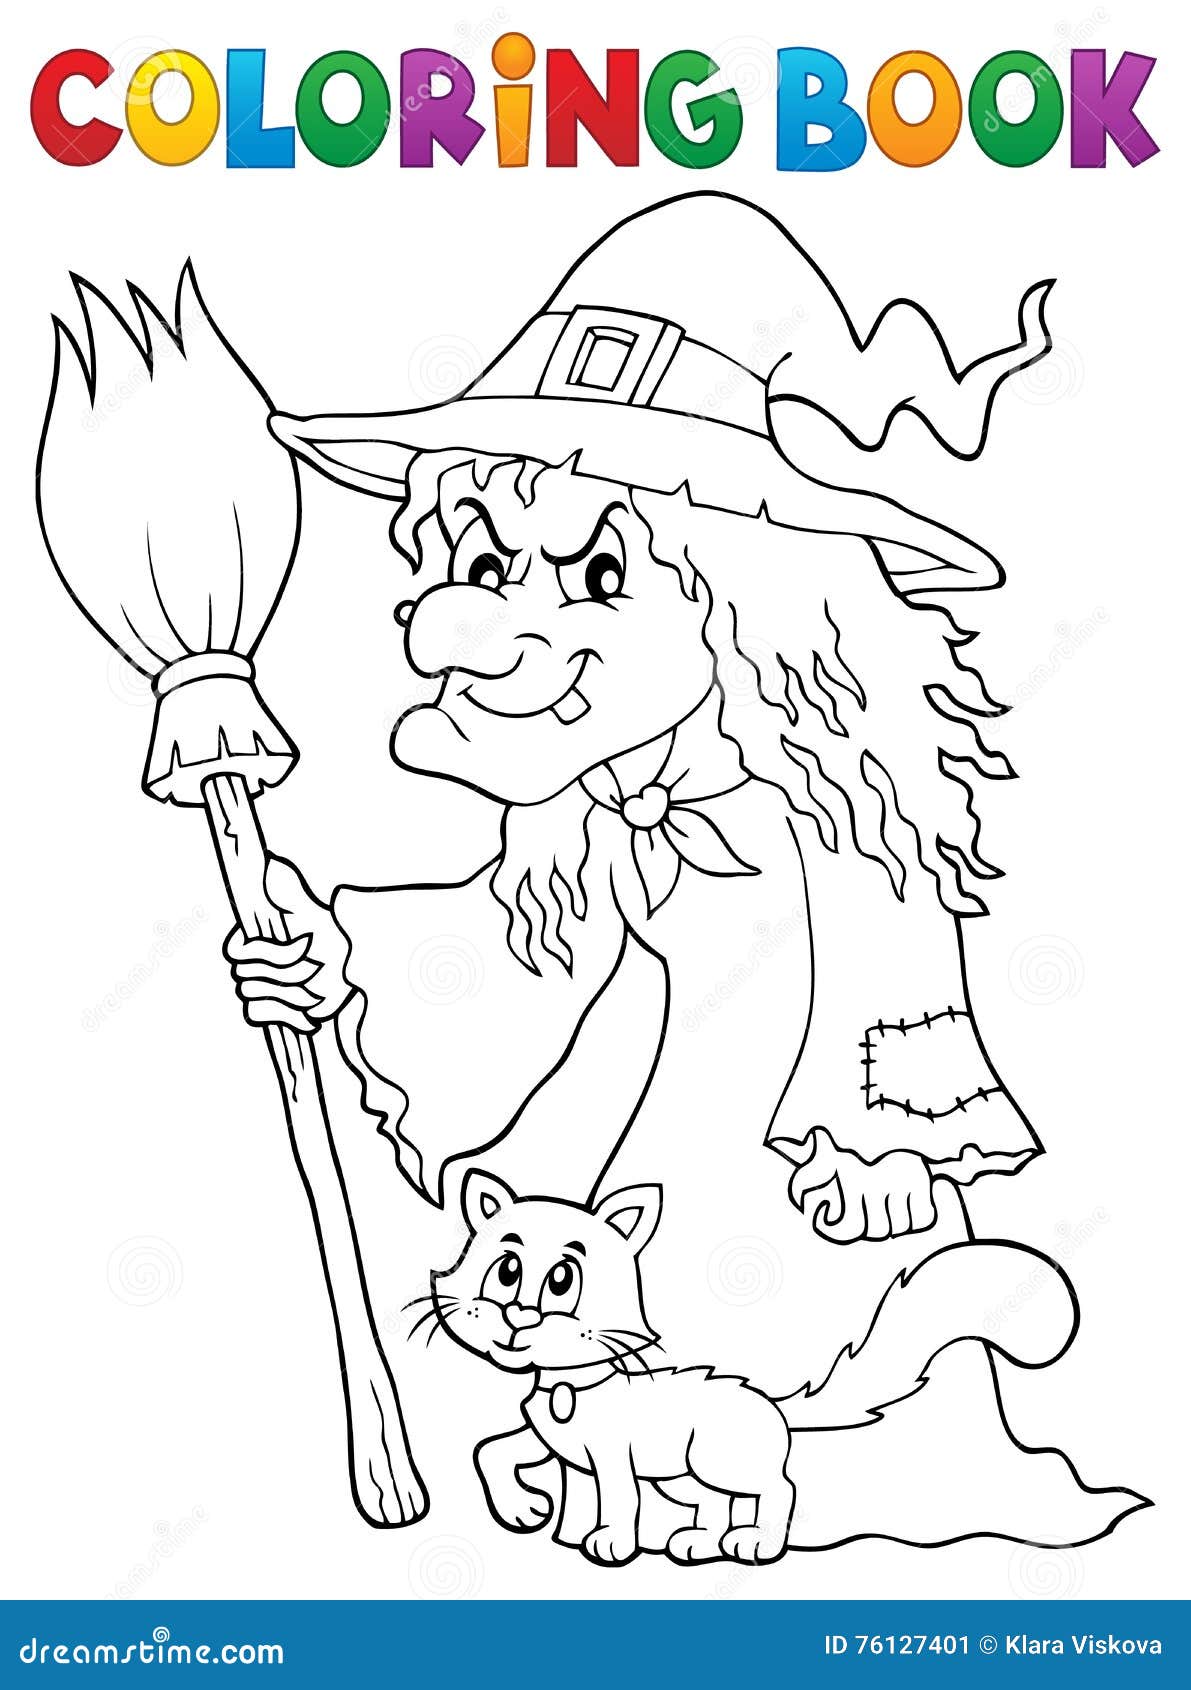 livro de colorir para crianças, bruxa de desenho animado voando em uma  vassoura com um gato. vetor isolado em um fundo branco. 11513029 Vetor no  Vecteezy